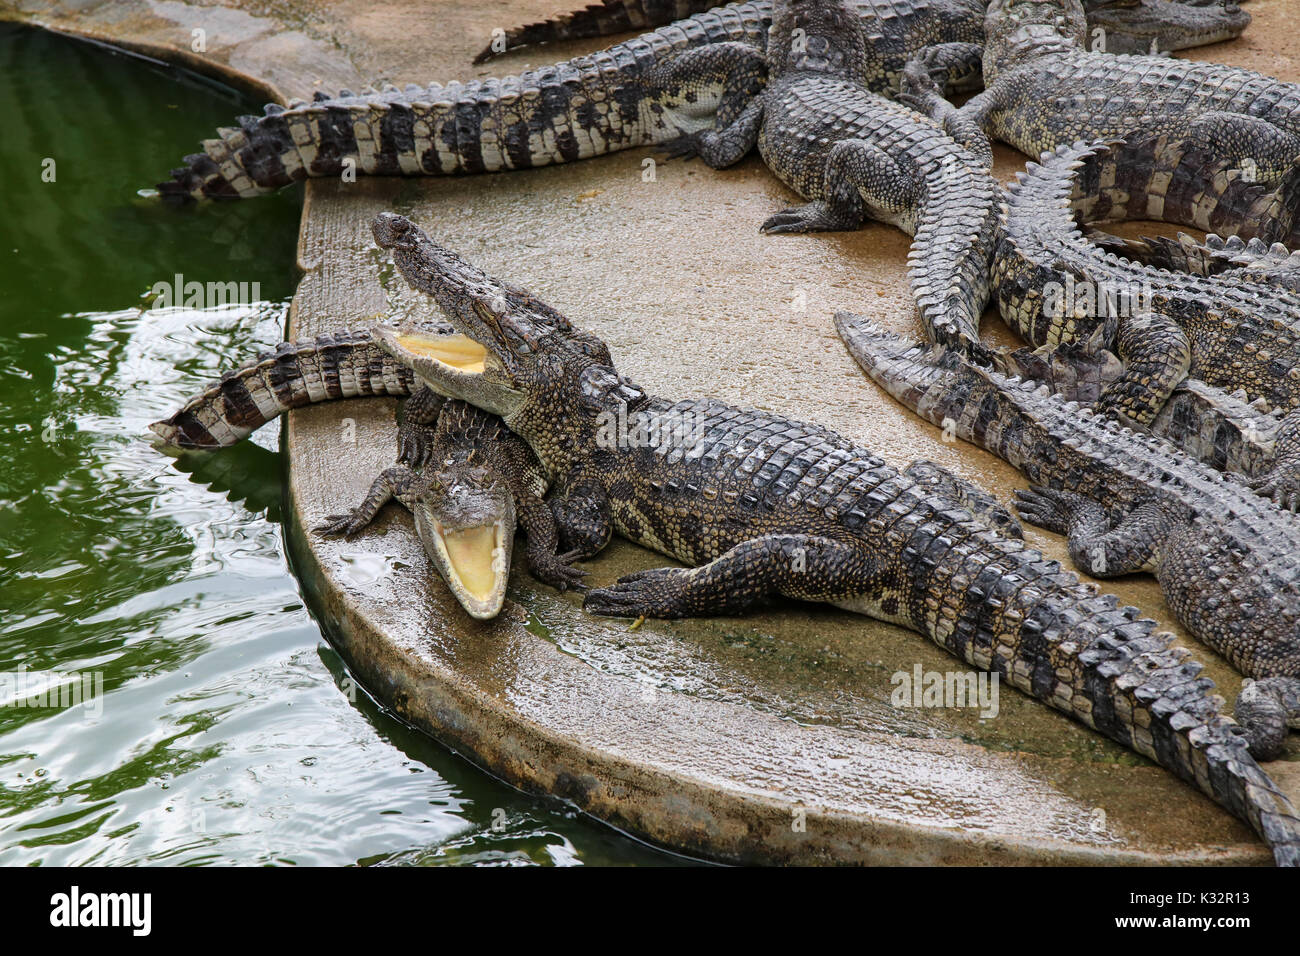 Krokodile ruht und offenen Mund an Land, um sich zu sonnen. Stockfoto